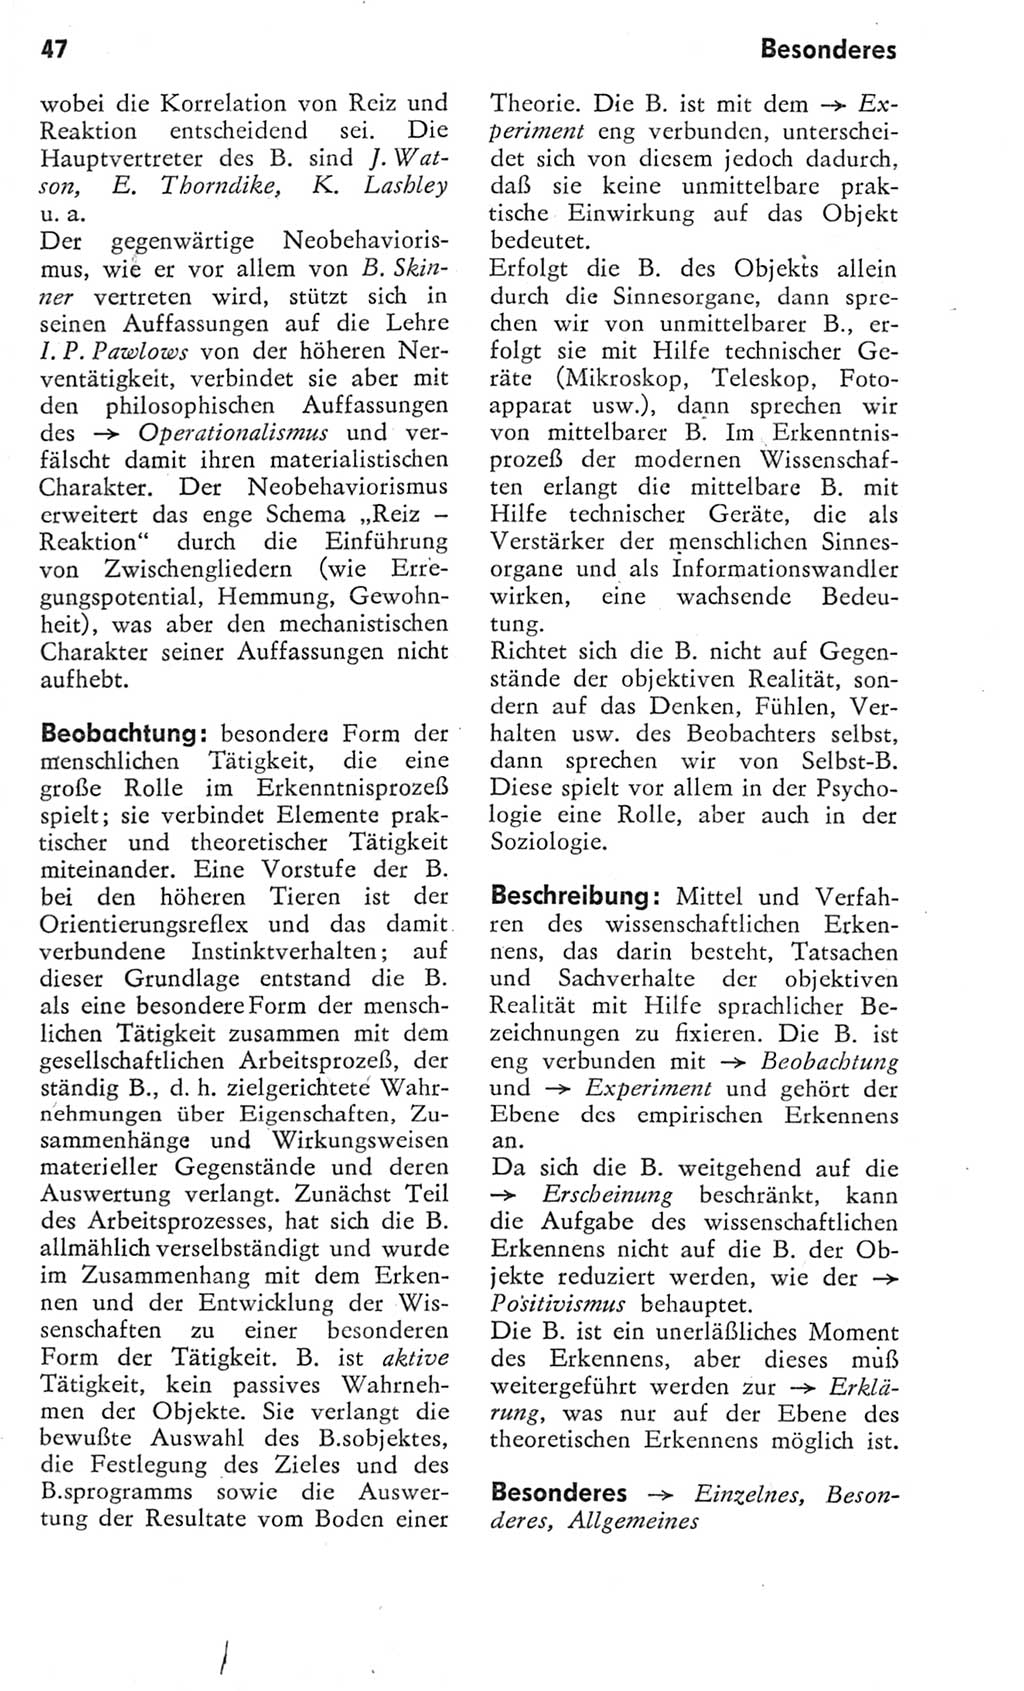 Kleines Wörterbuch der marxistisch-leninistischen Philosophie [Deutsche Demokratische Republik (DDR)] 1975, Seite 47 (Kl. Wb. ML Phil. DDR 1975, S. 47)